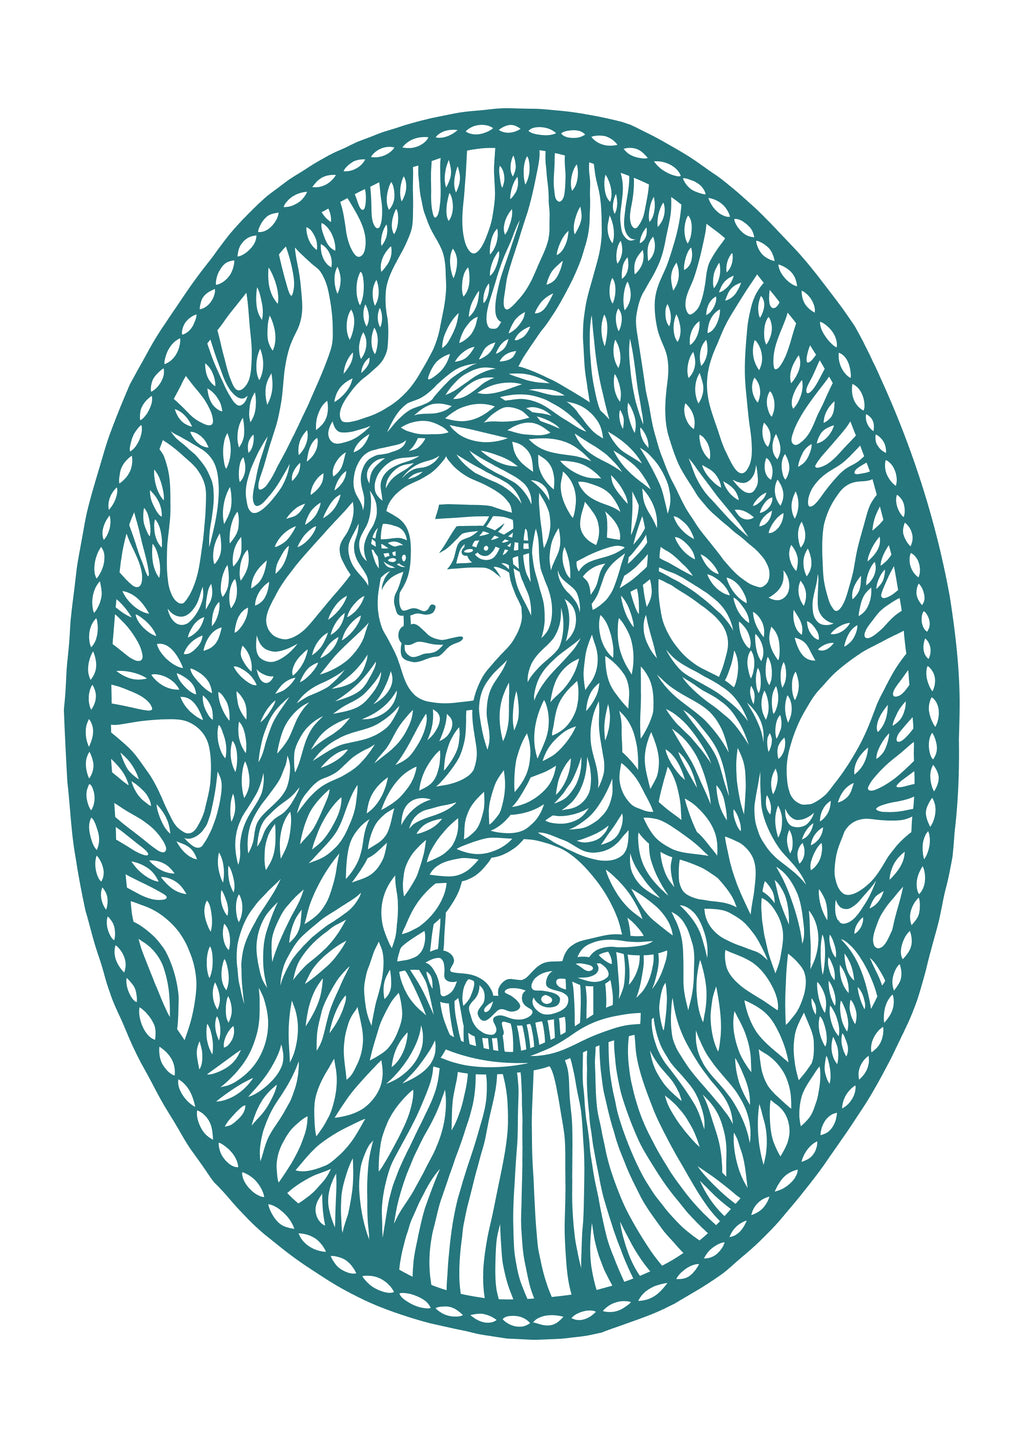 Wood elf girl Original papercut A5 by MarinaPapercuts